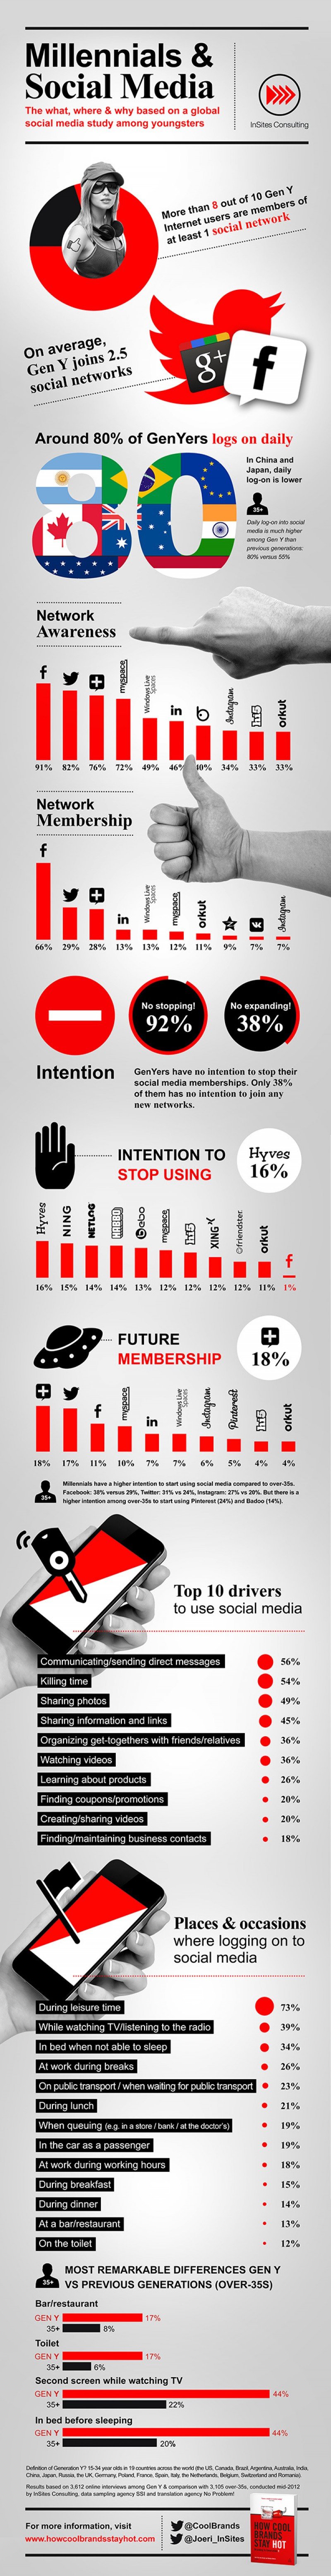 Infográfico: Millennials y redes sociales. CLICK PARA AMPLIAR IMAGEN.